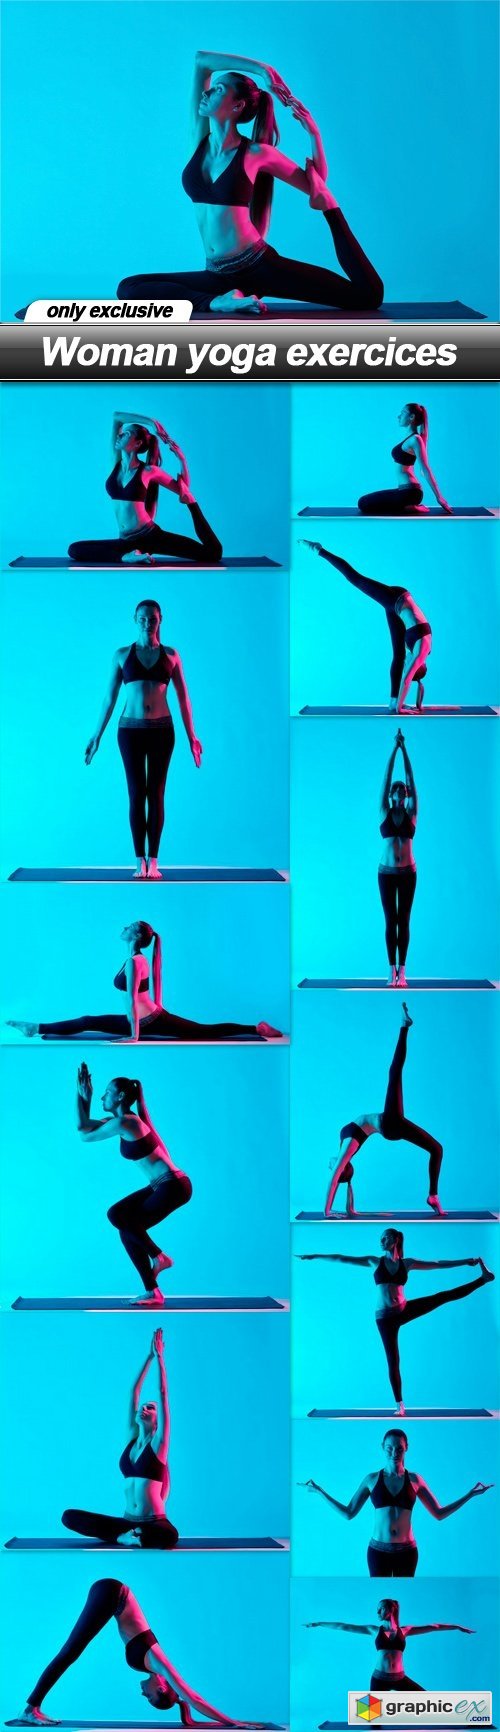 Woman yoga exercices - 13 UHQ JPEG